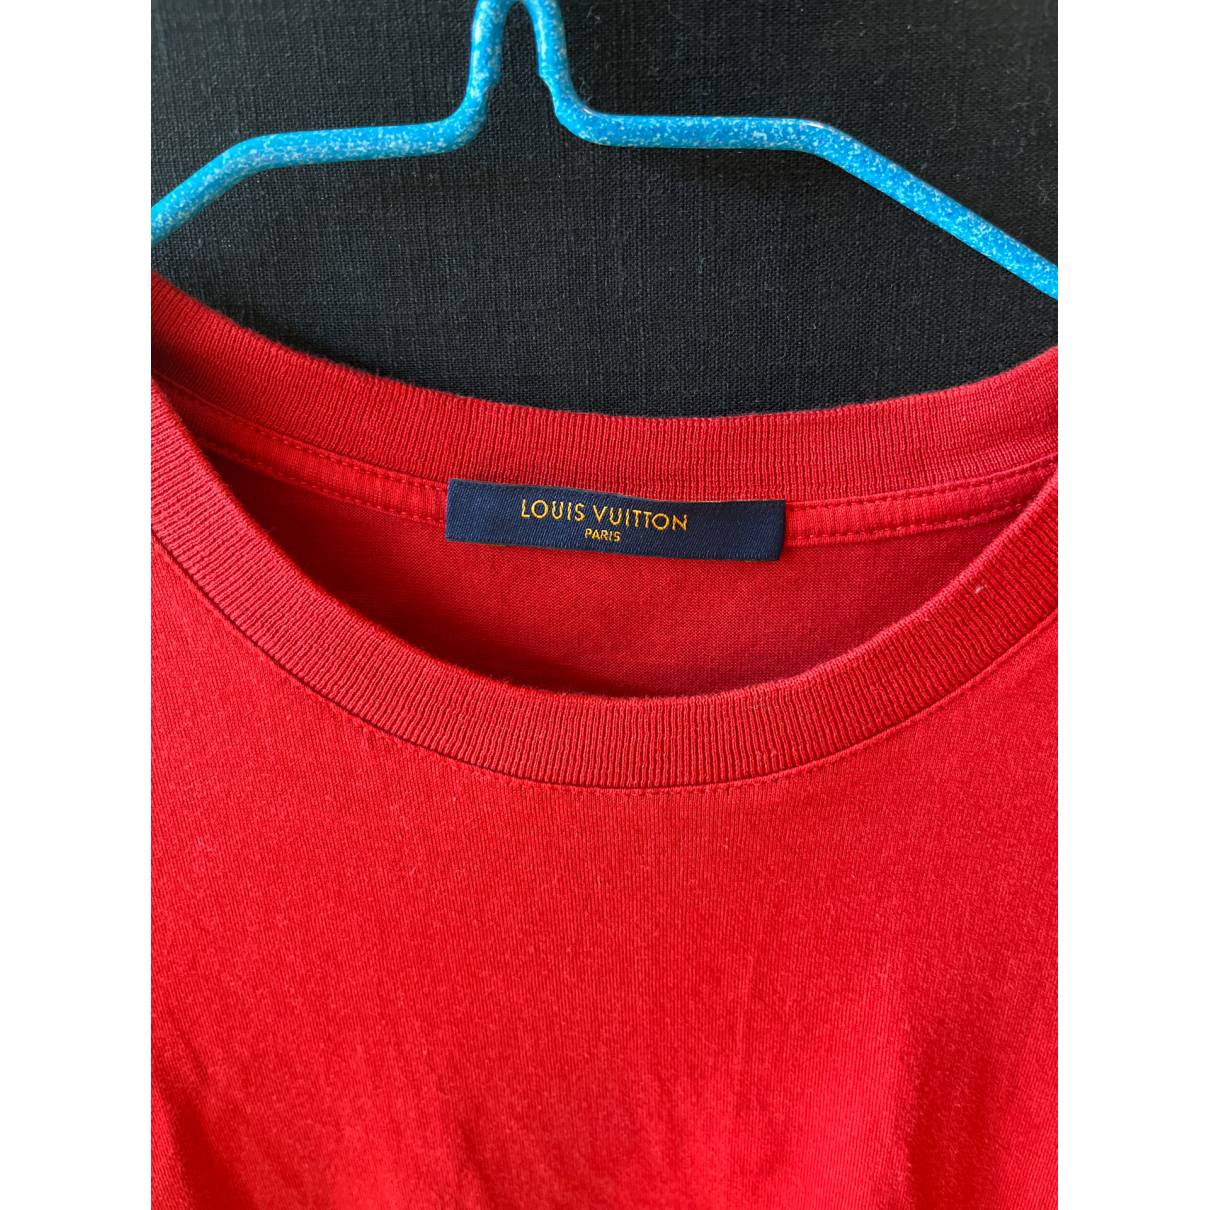 T-shirt Louis Vuitton Multicolour size XS International in Cotton - 27485632